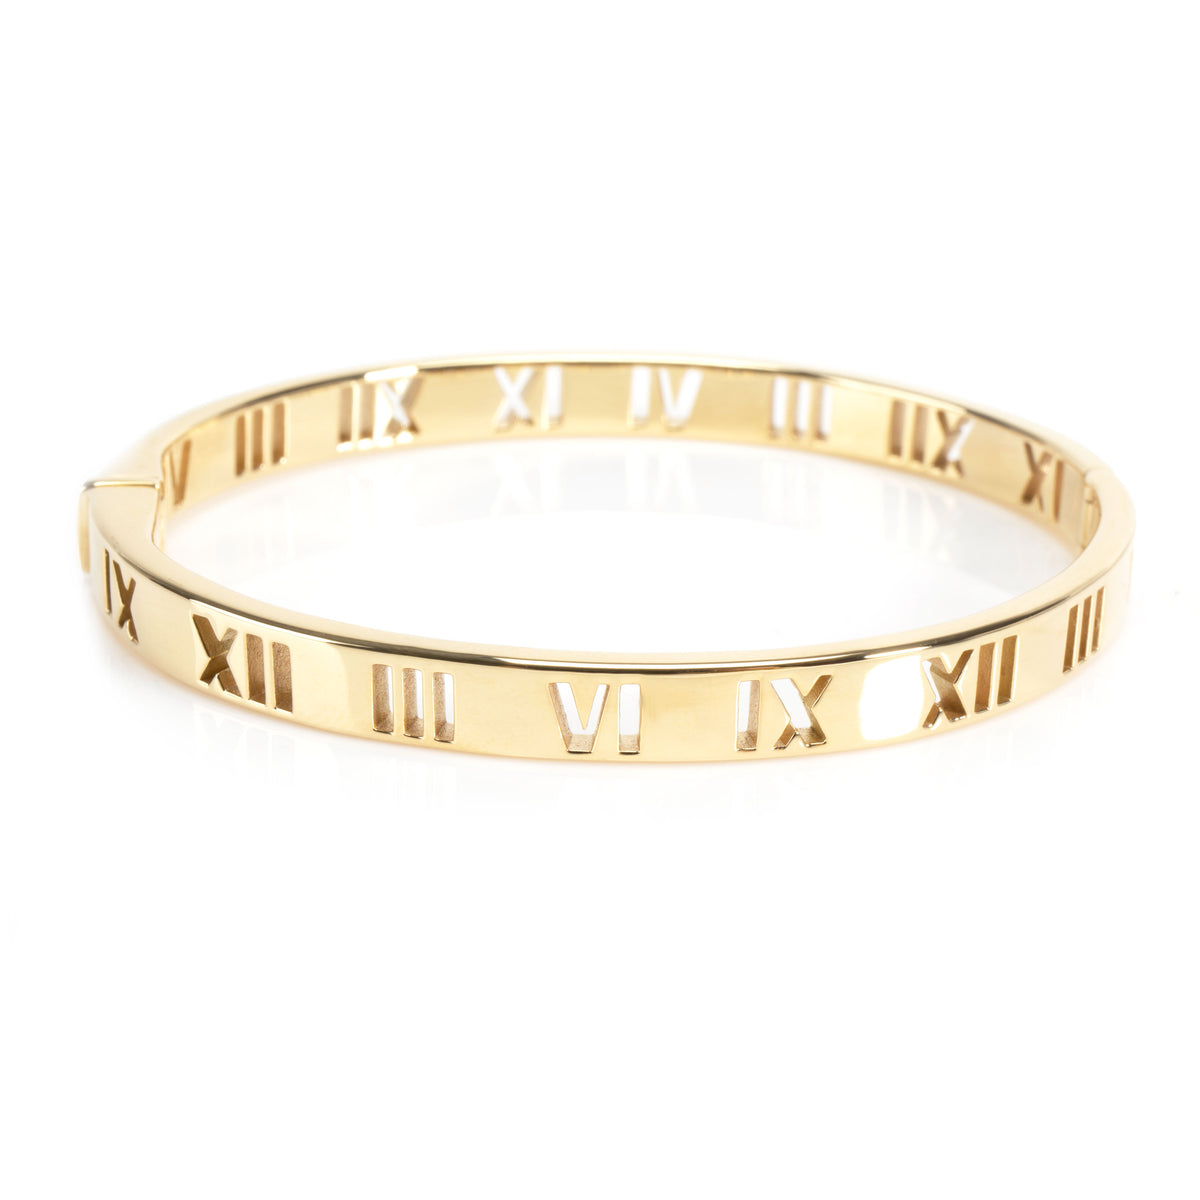 Tiffany & Co. Atlas Pierced Hinged Diamond Bracelet in 18K Yellow Gold